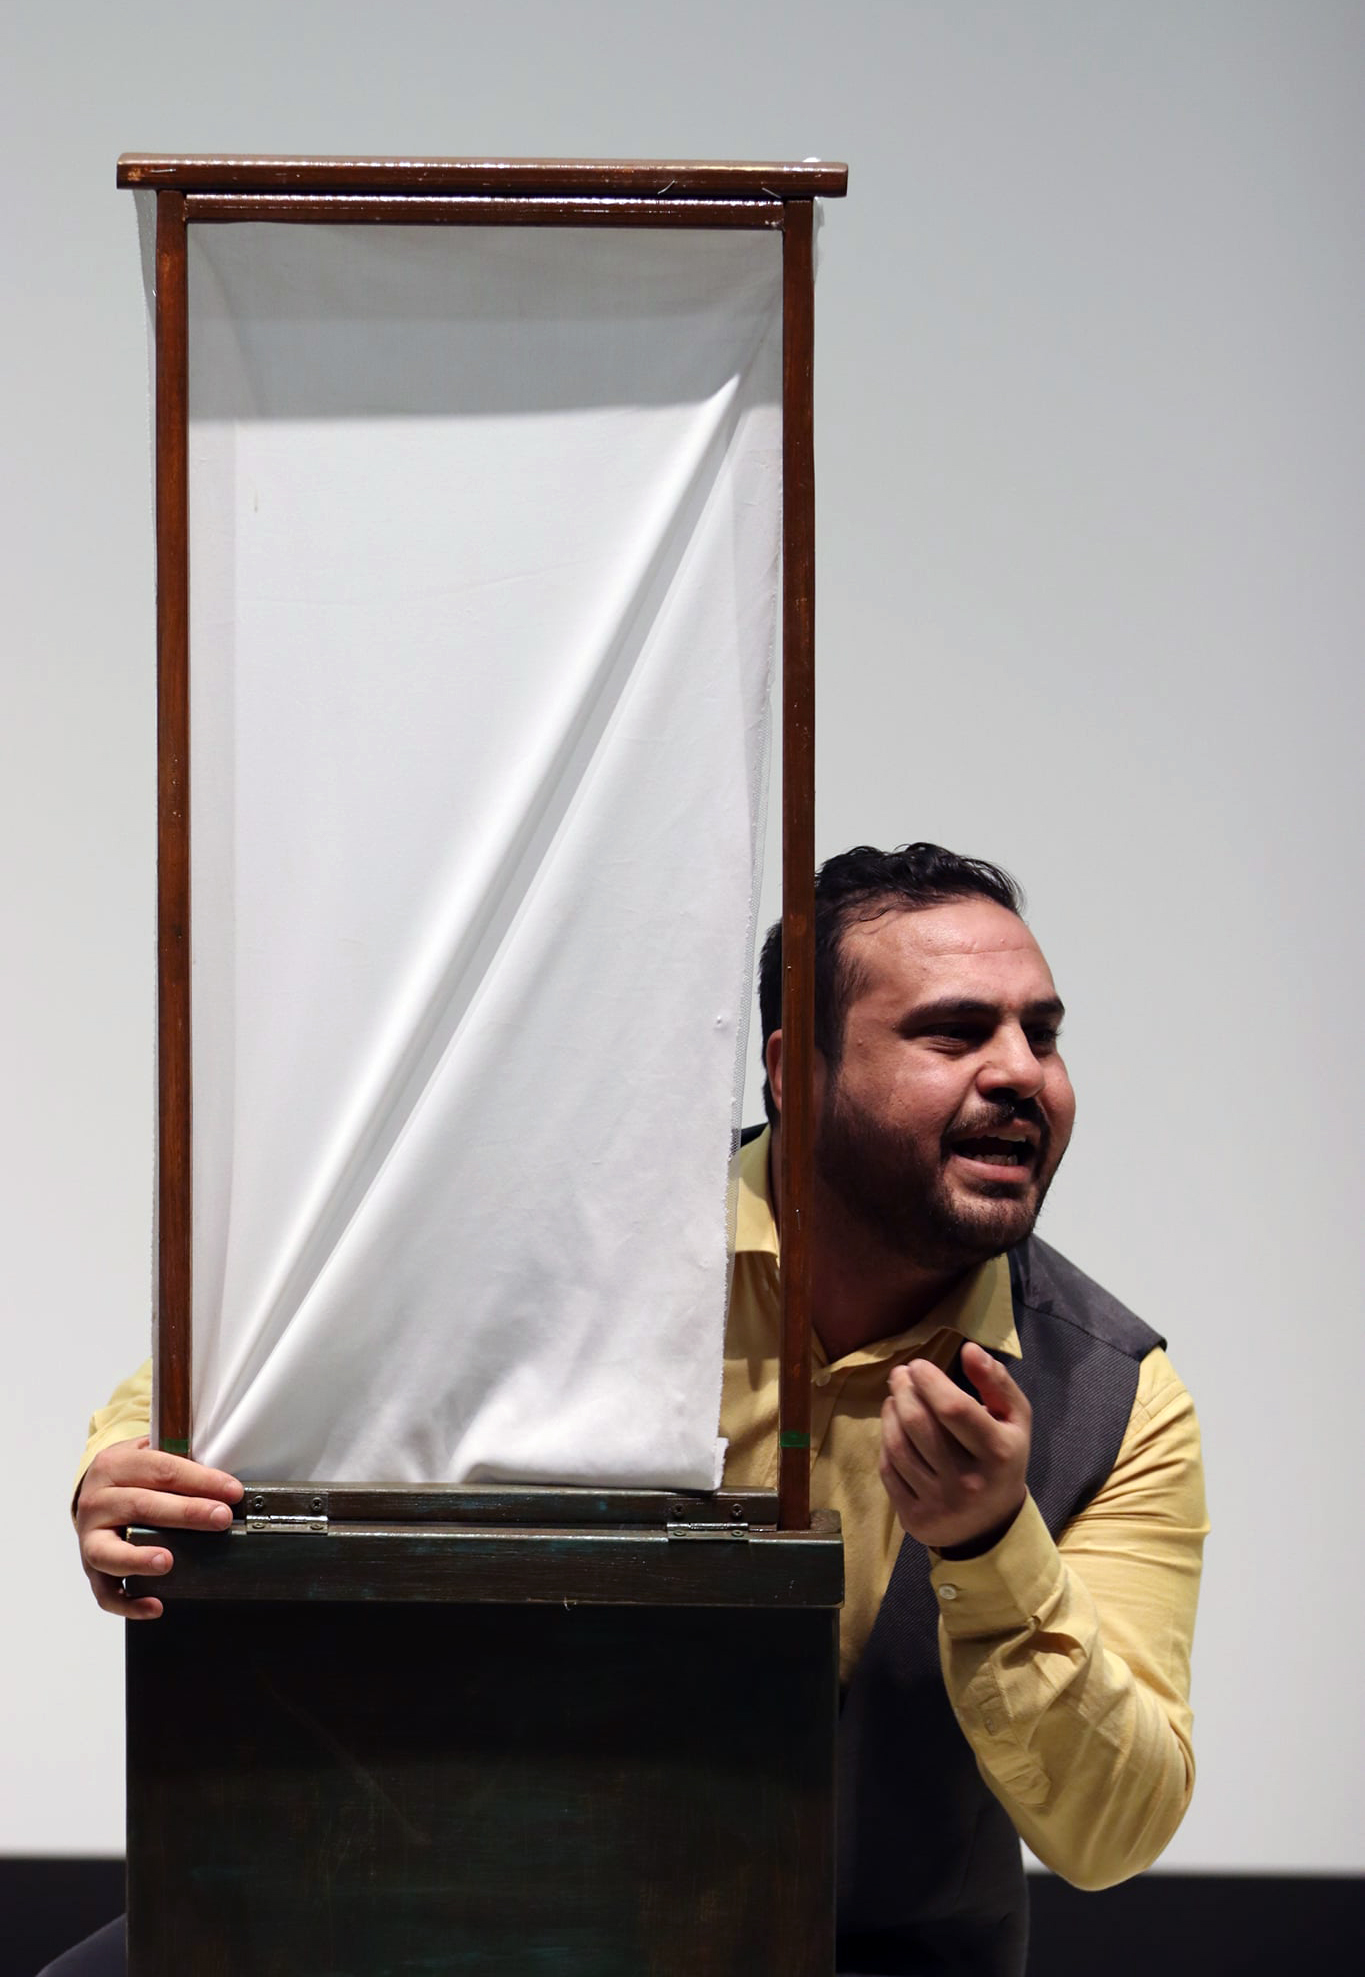 الجامعة تعرض مسرحية بعنوان "على الدوار" للفنان الفلسطيني علاء شحادة